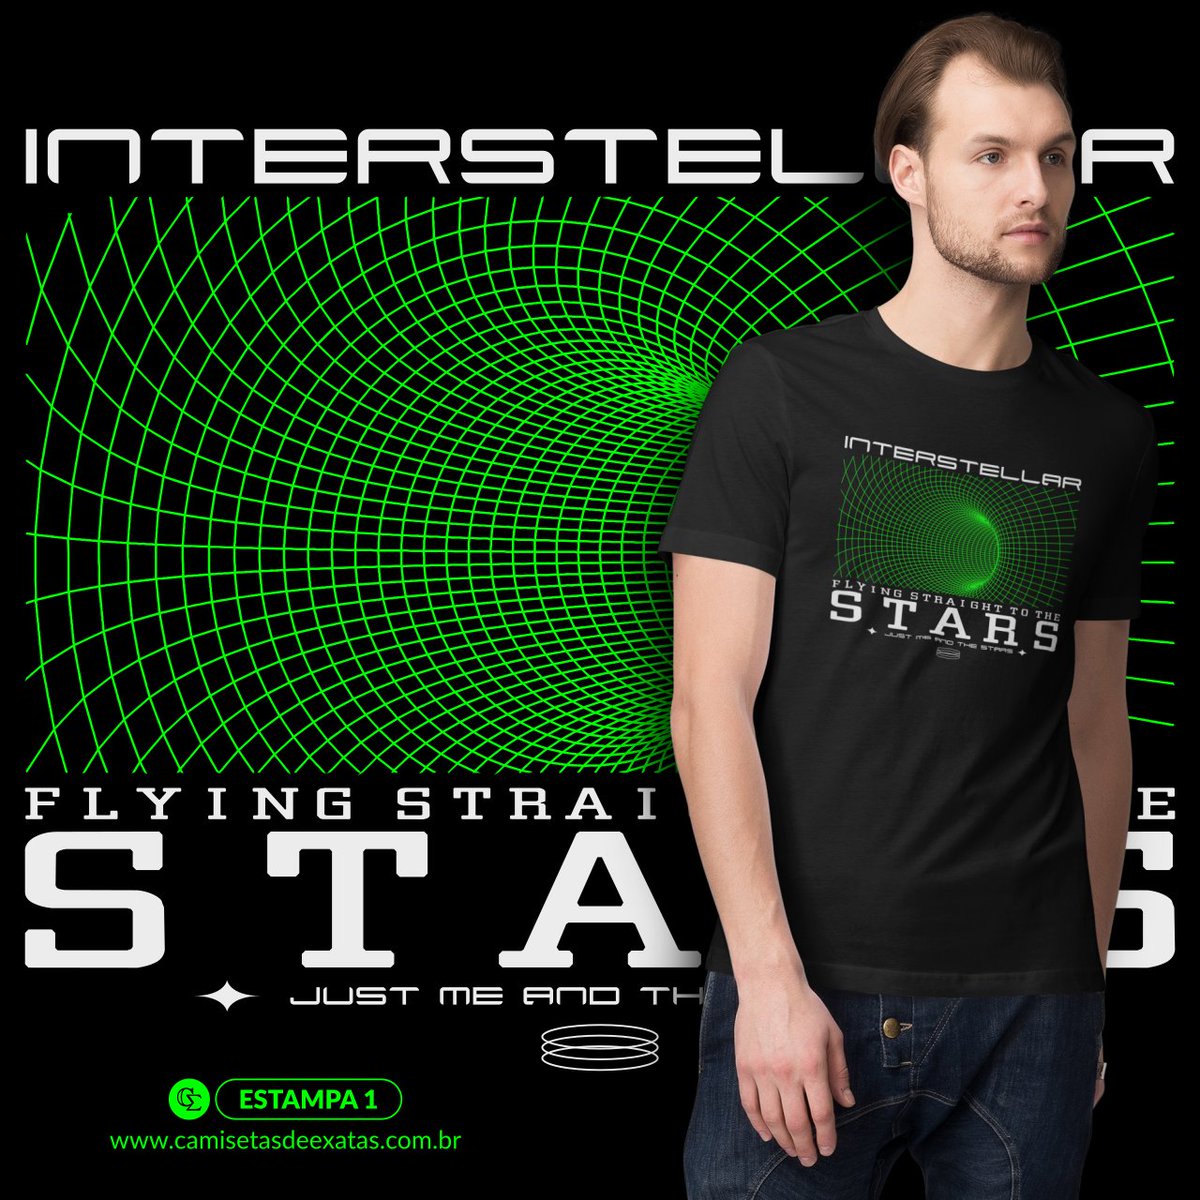 🚀✨Camiseta INTERSTELLAR 3 v.3

🔎 #camisetasdeexatas #camisetasdefisica #Astronomia #Universo #AstroFísica #Cosmologia #FísicaQuântica